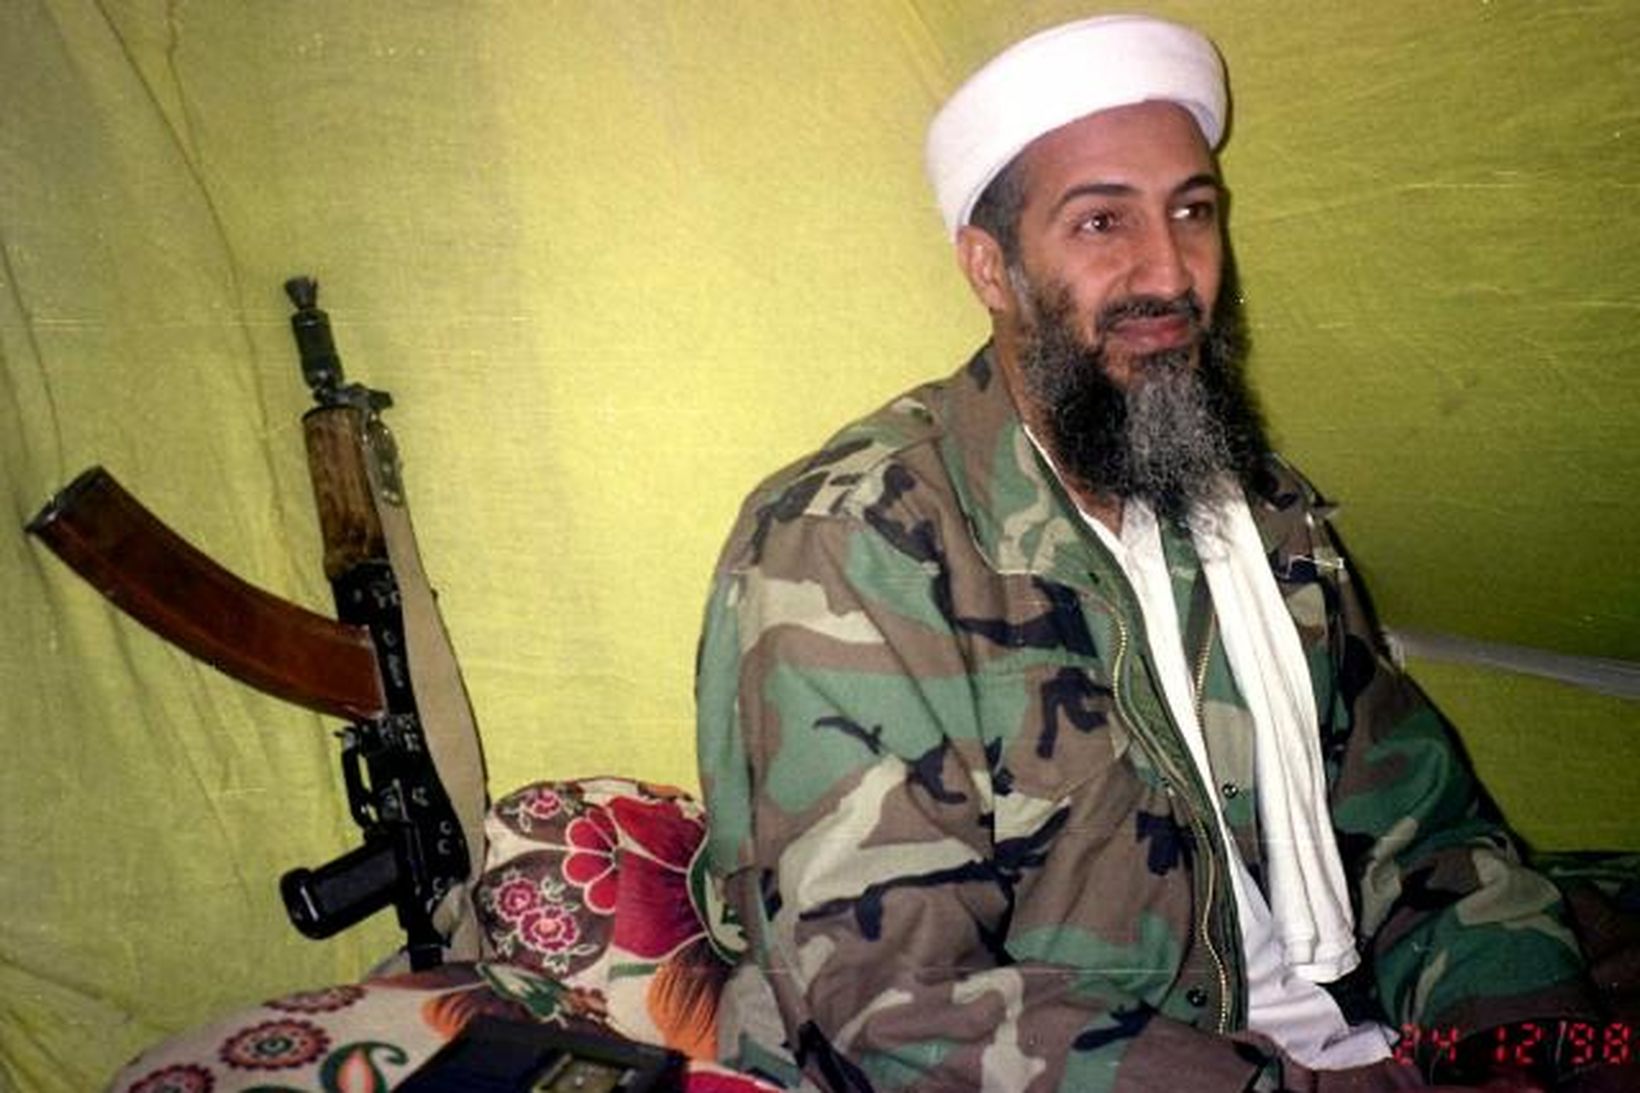 Mynd af Osama bin Laden frá 1998.